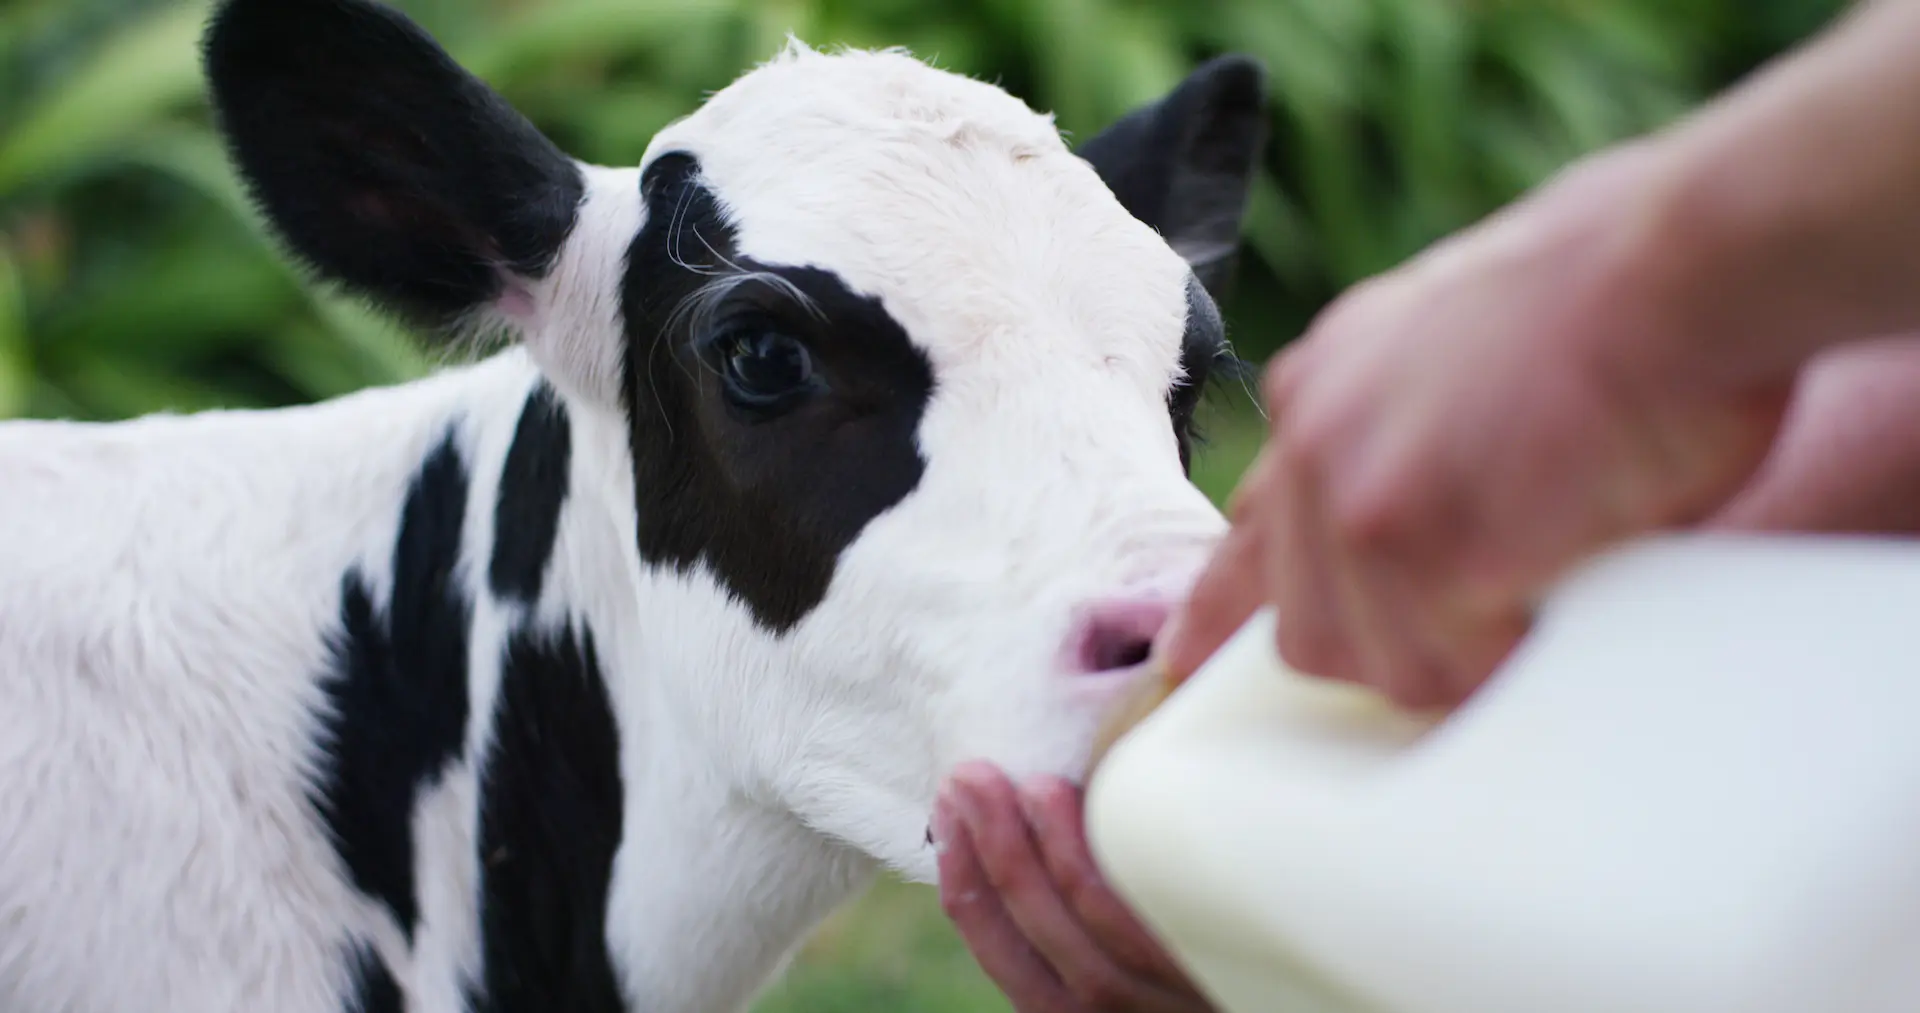 Calf feeding from bottle